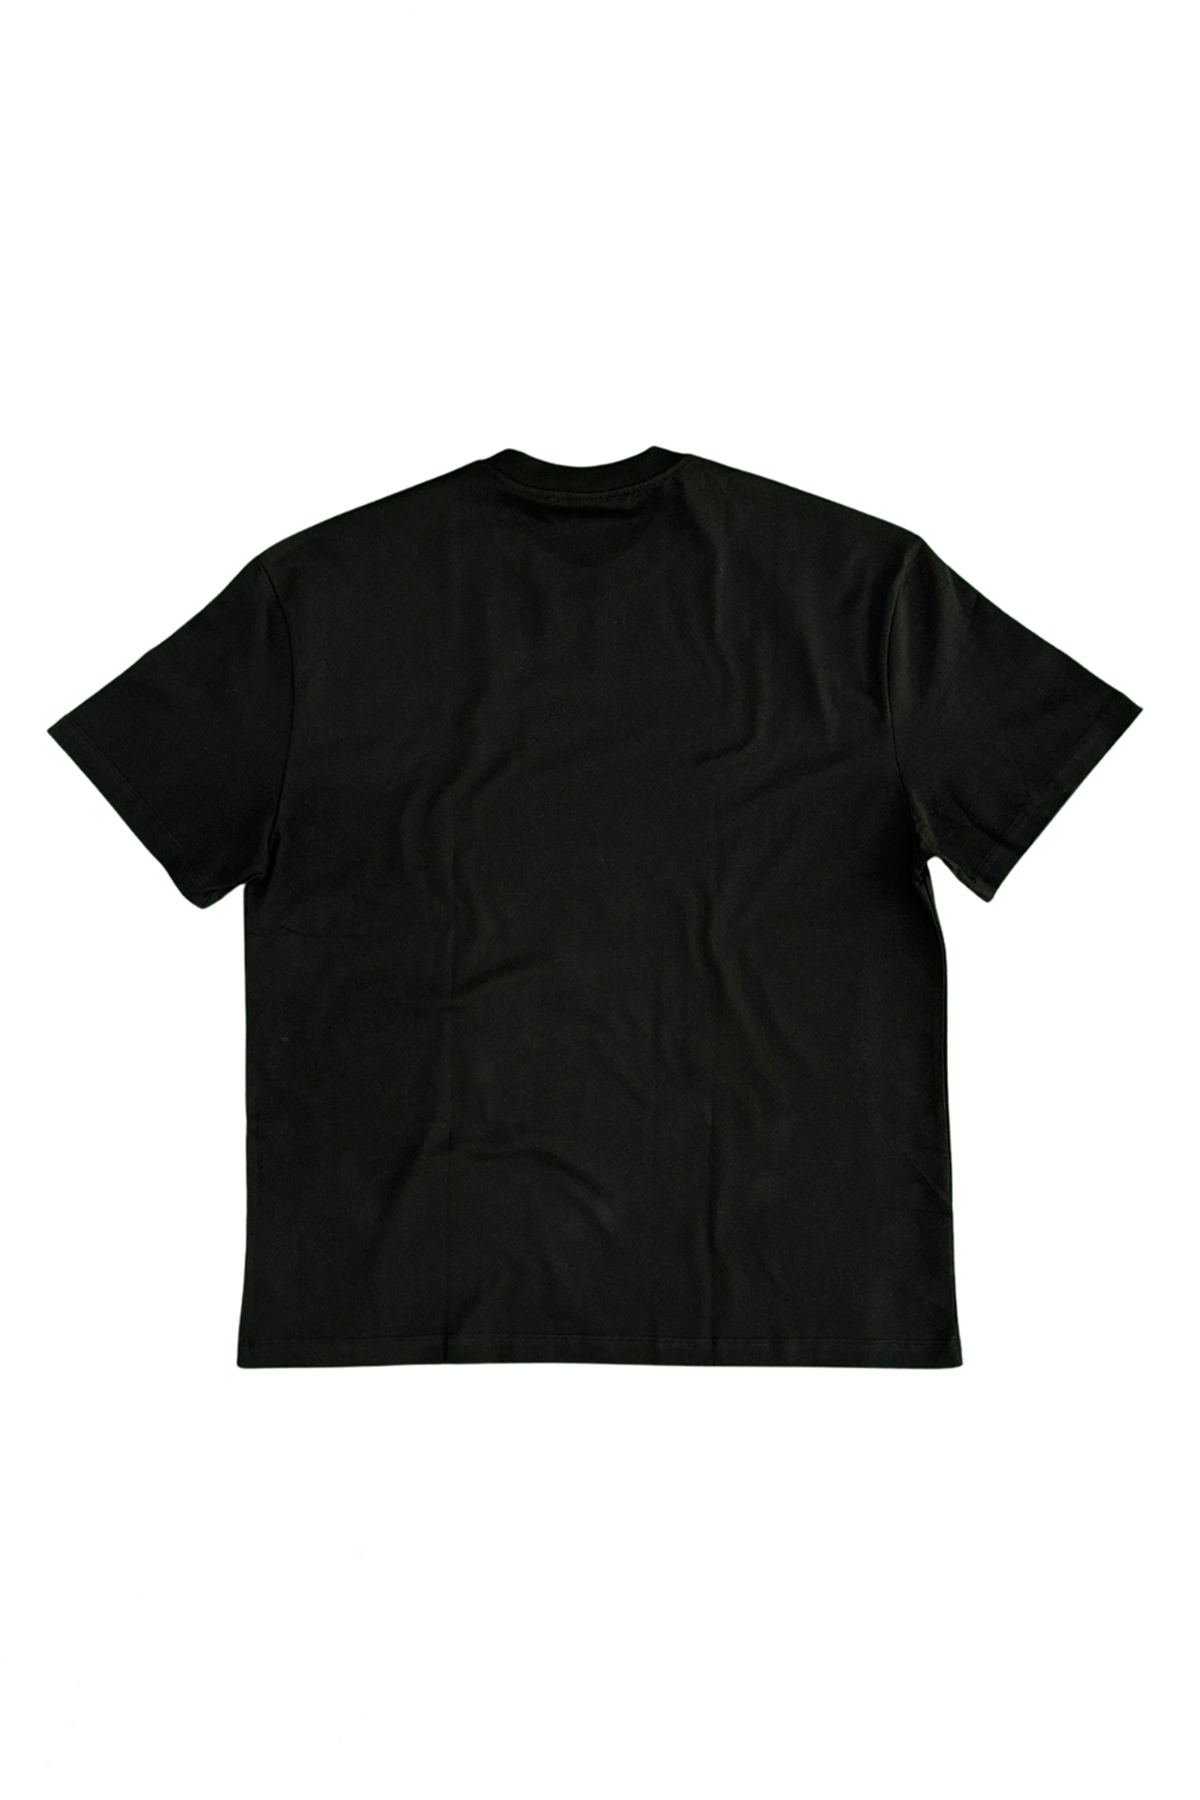 Oversized-Crew-Neck-T-shirt-Unisex-black-back